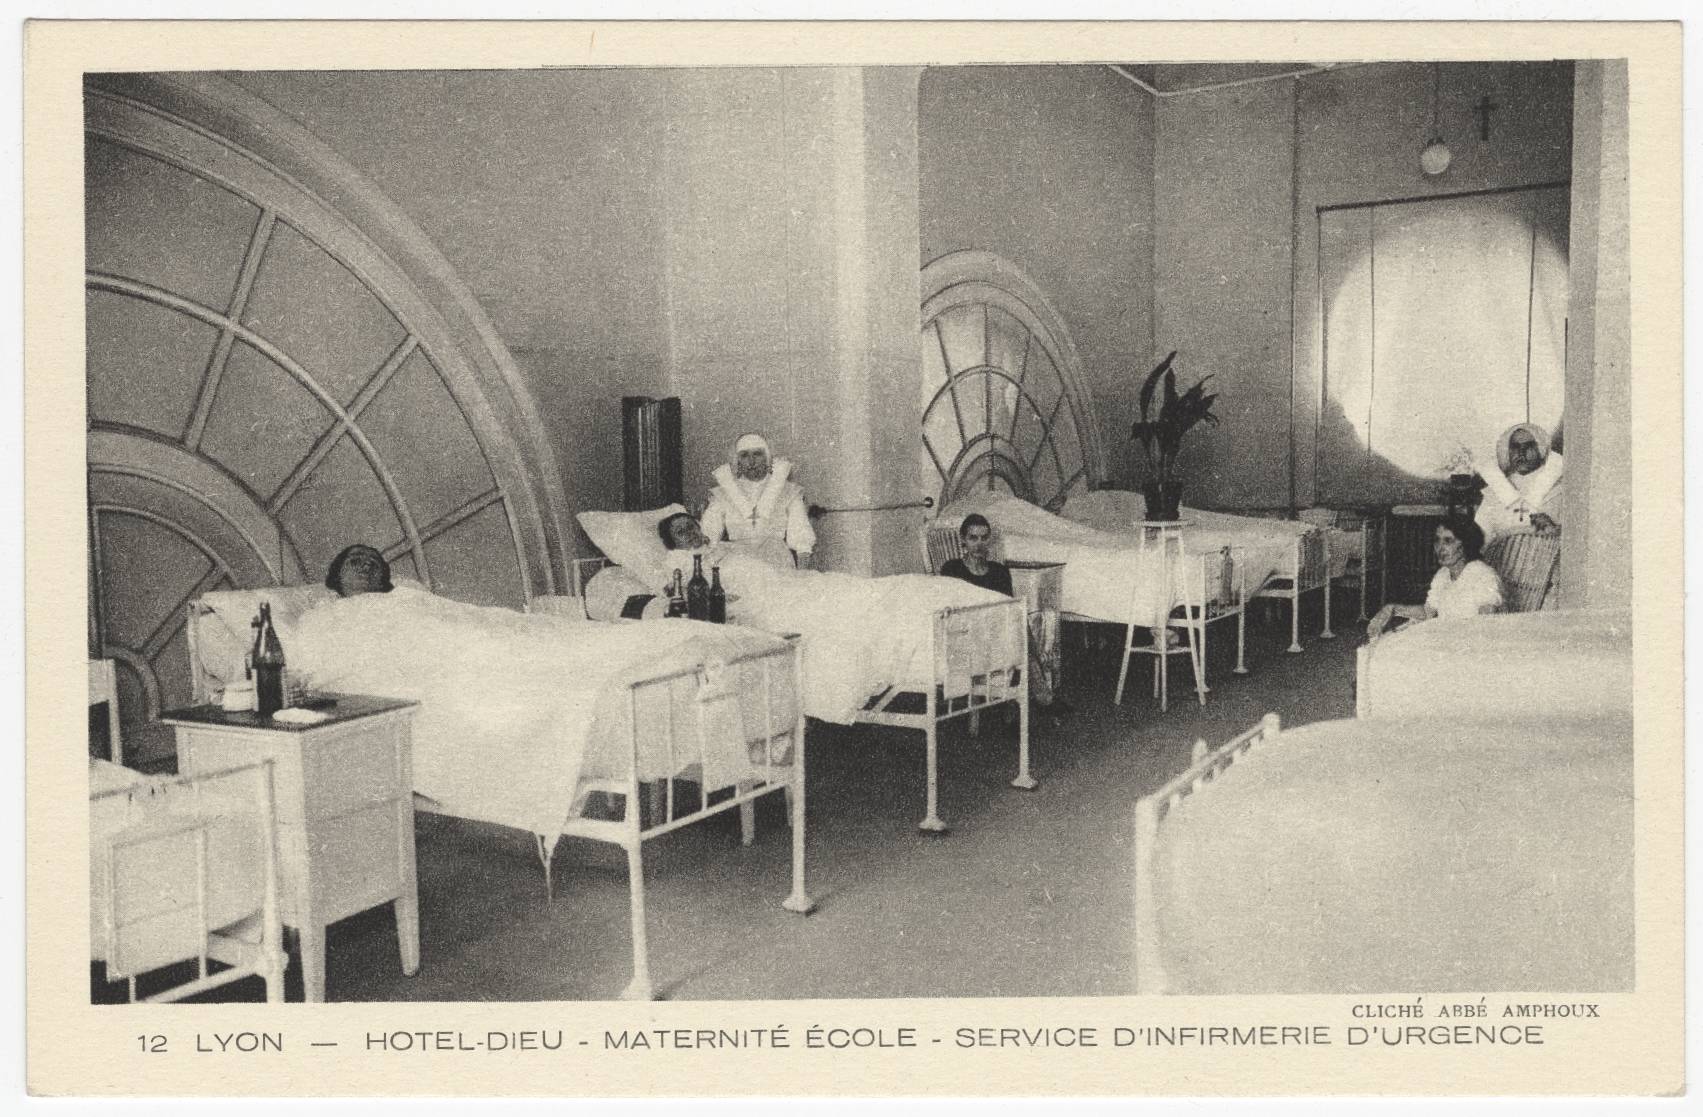 Lyon - Hôtel-Dieu, maternité école, service d'infirmerie d'urgence : carte postale NB (vers 1910, cote : 4FI/3589)